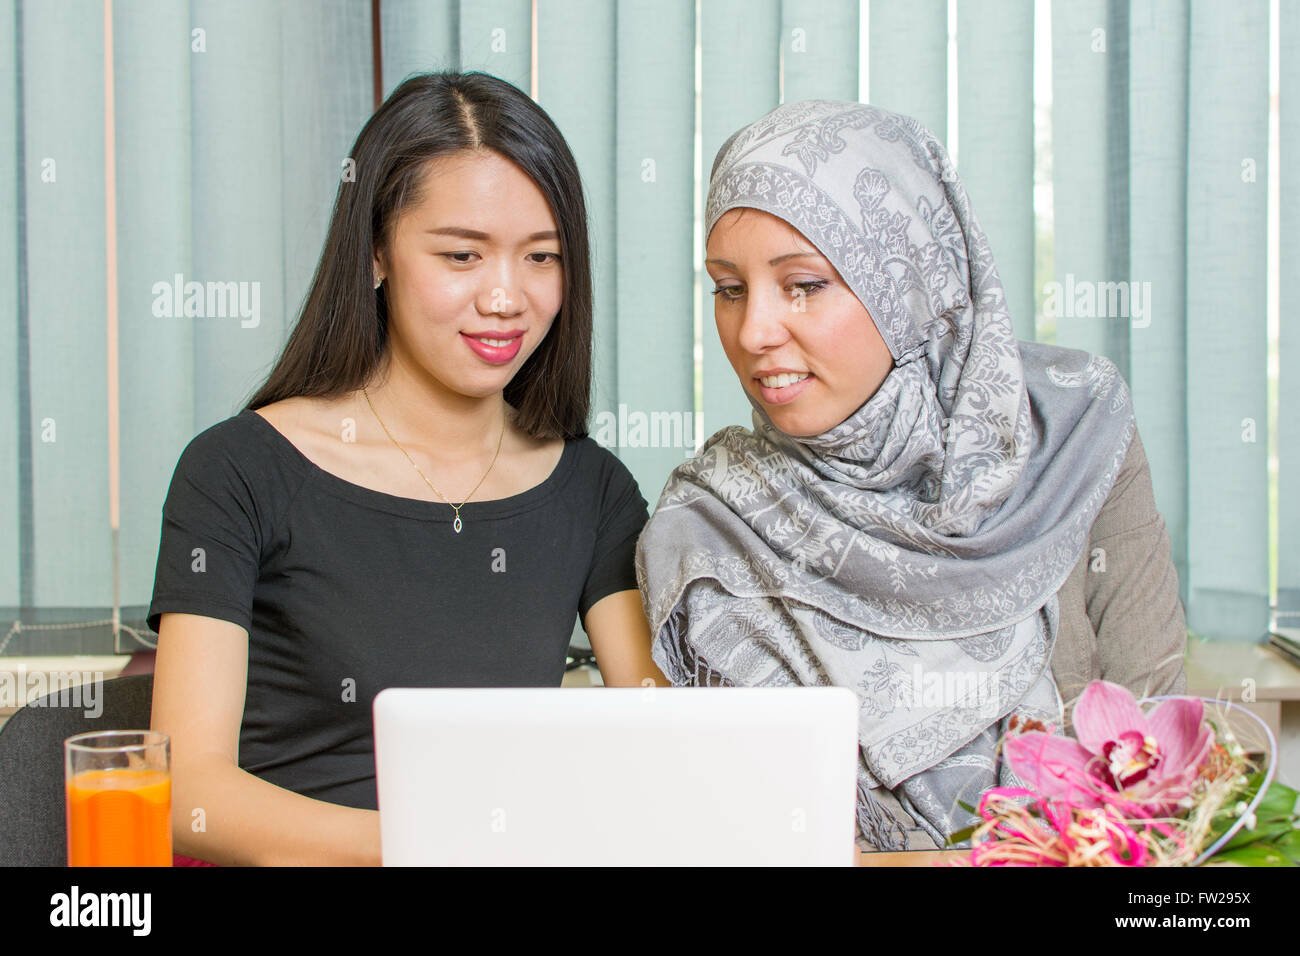 Les filles musulmanes de l'Asie et de travailler ensemble sur un ordinateur portable Banque D'Images